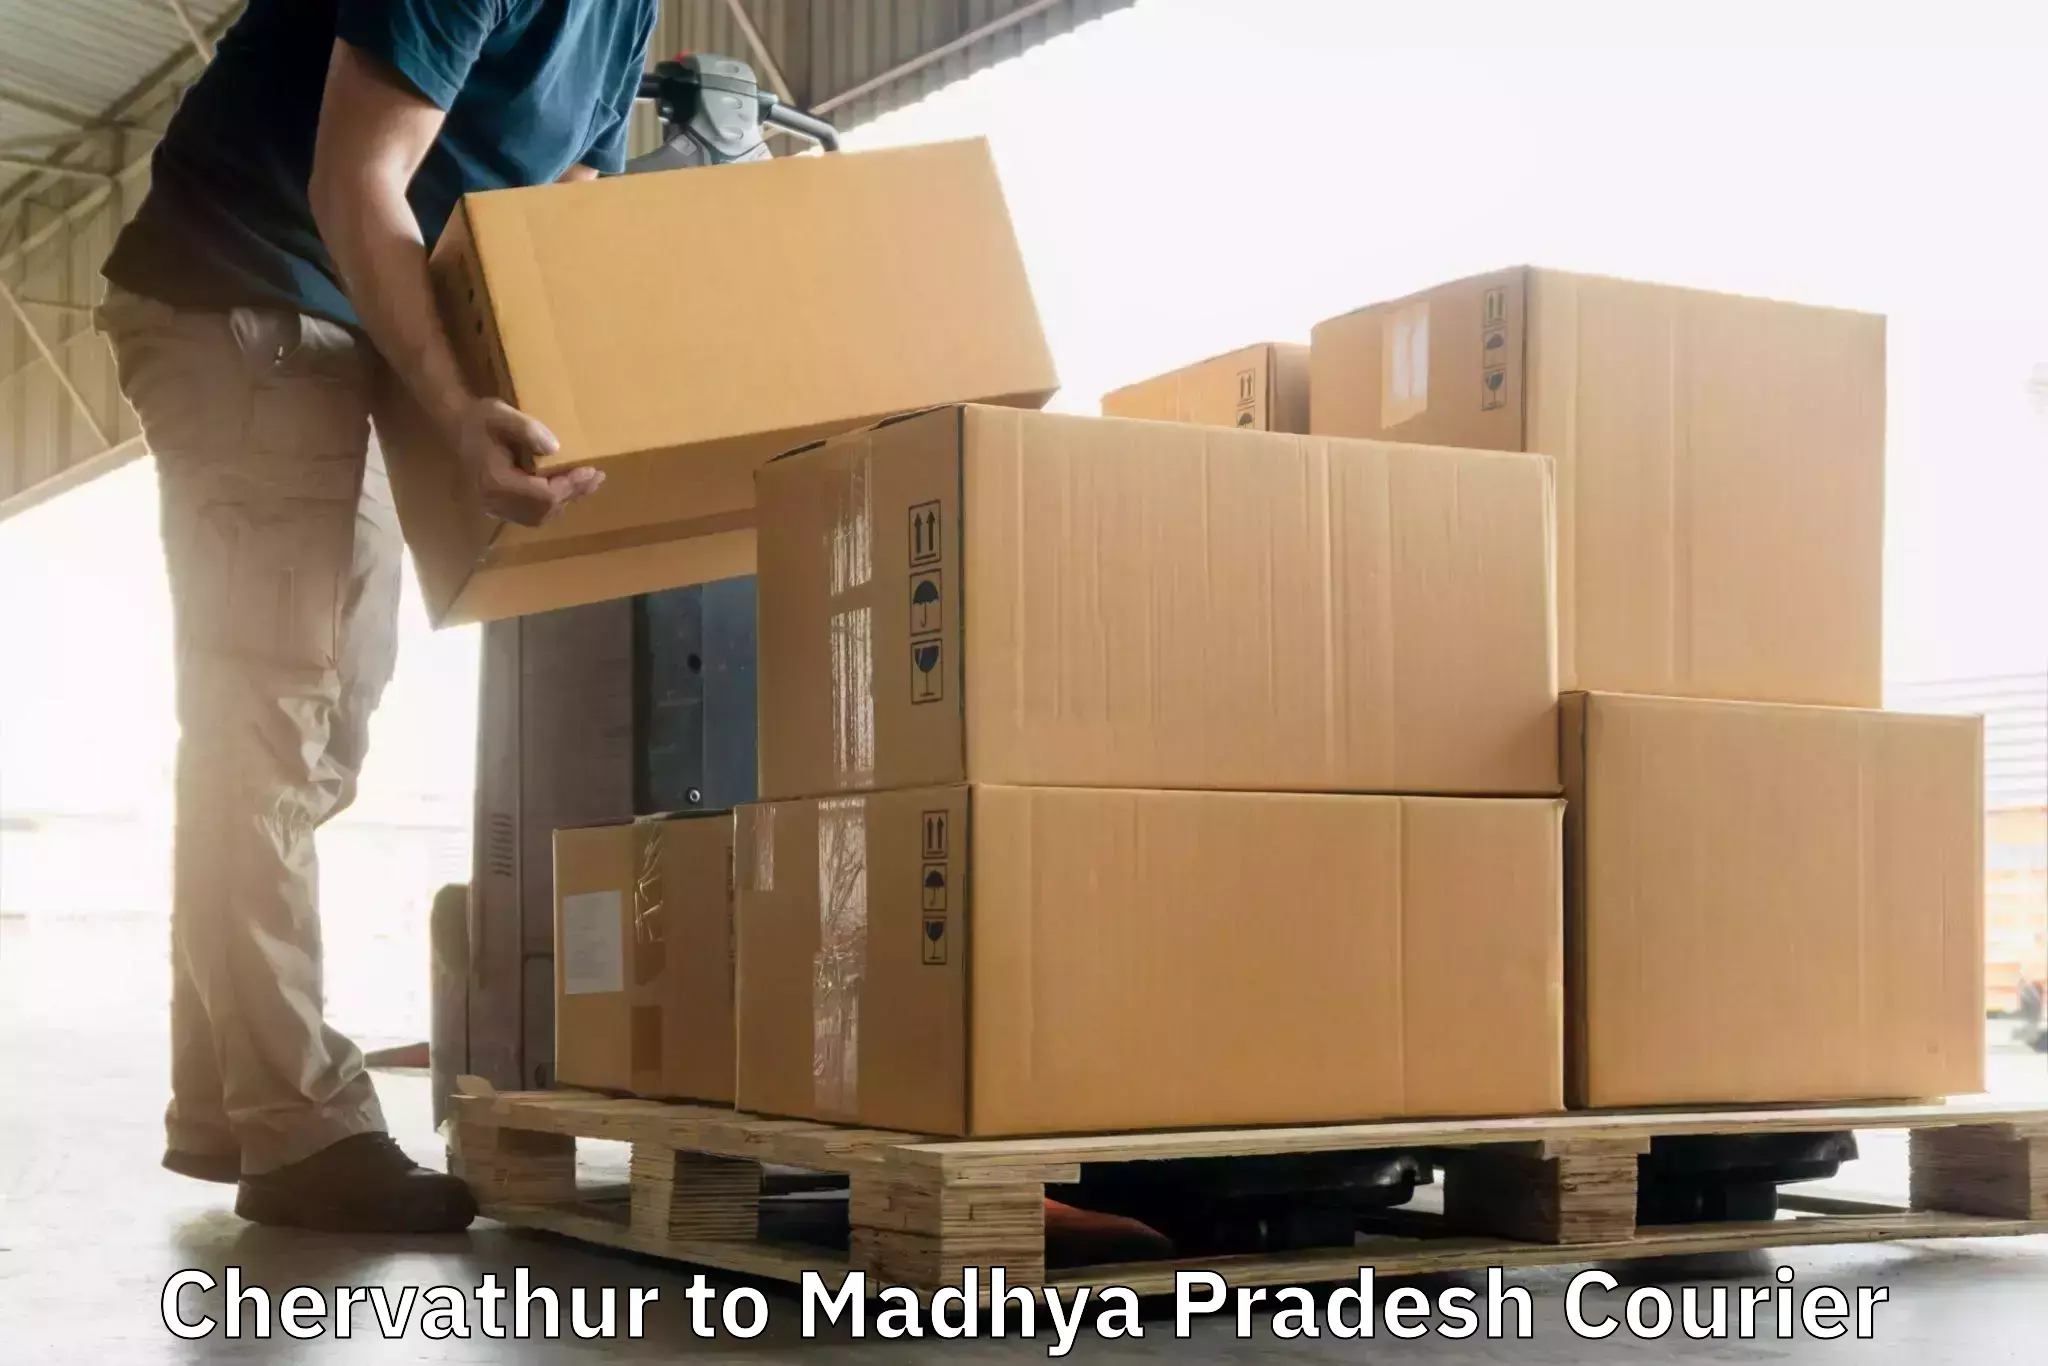 Modern delivery methods in Chervathur to Begumganj